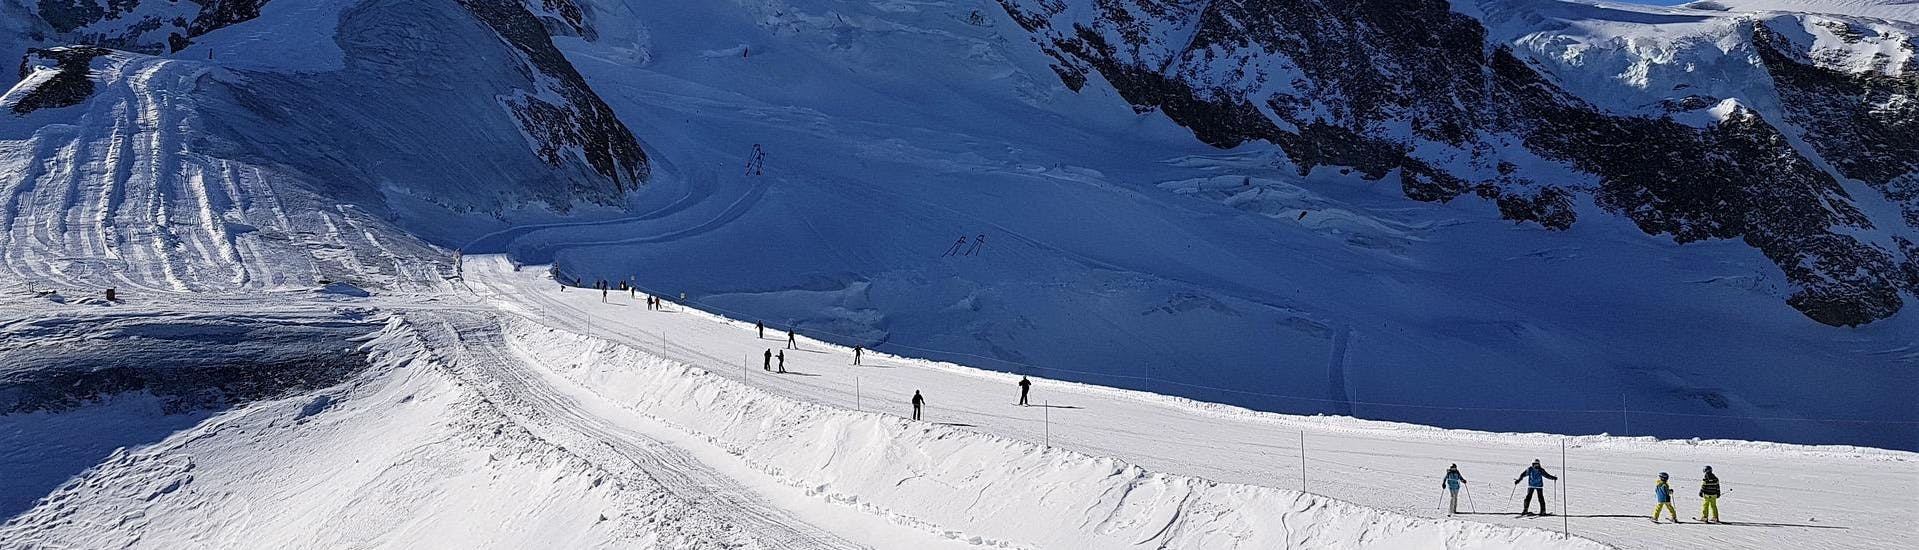 Ausblick auf die sonnige Berglandschaft beim Skifahren lernen mit den Skischulen in Saas Fee.